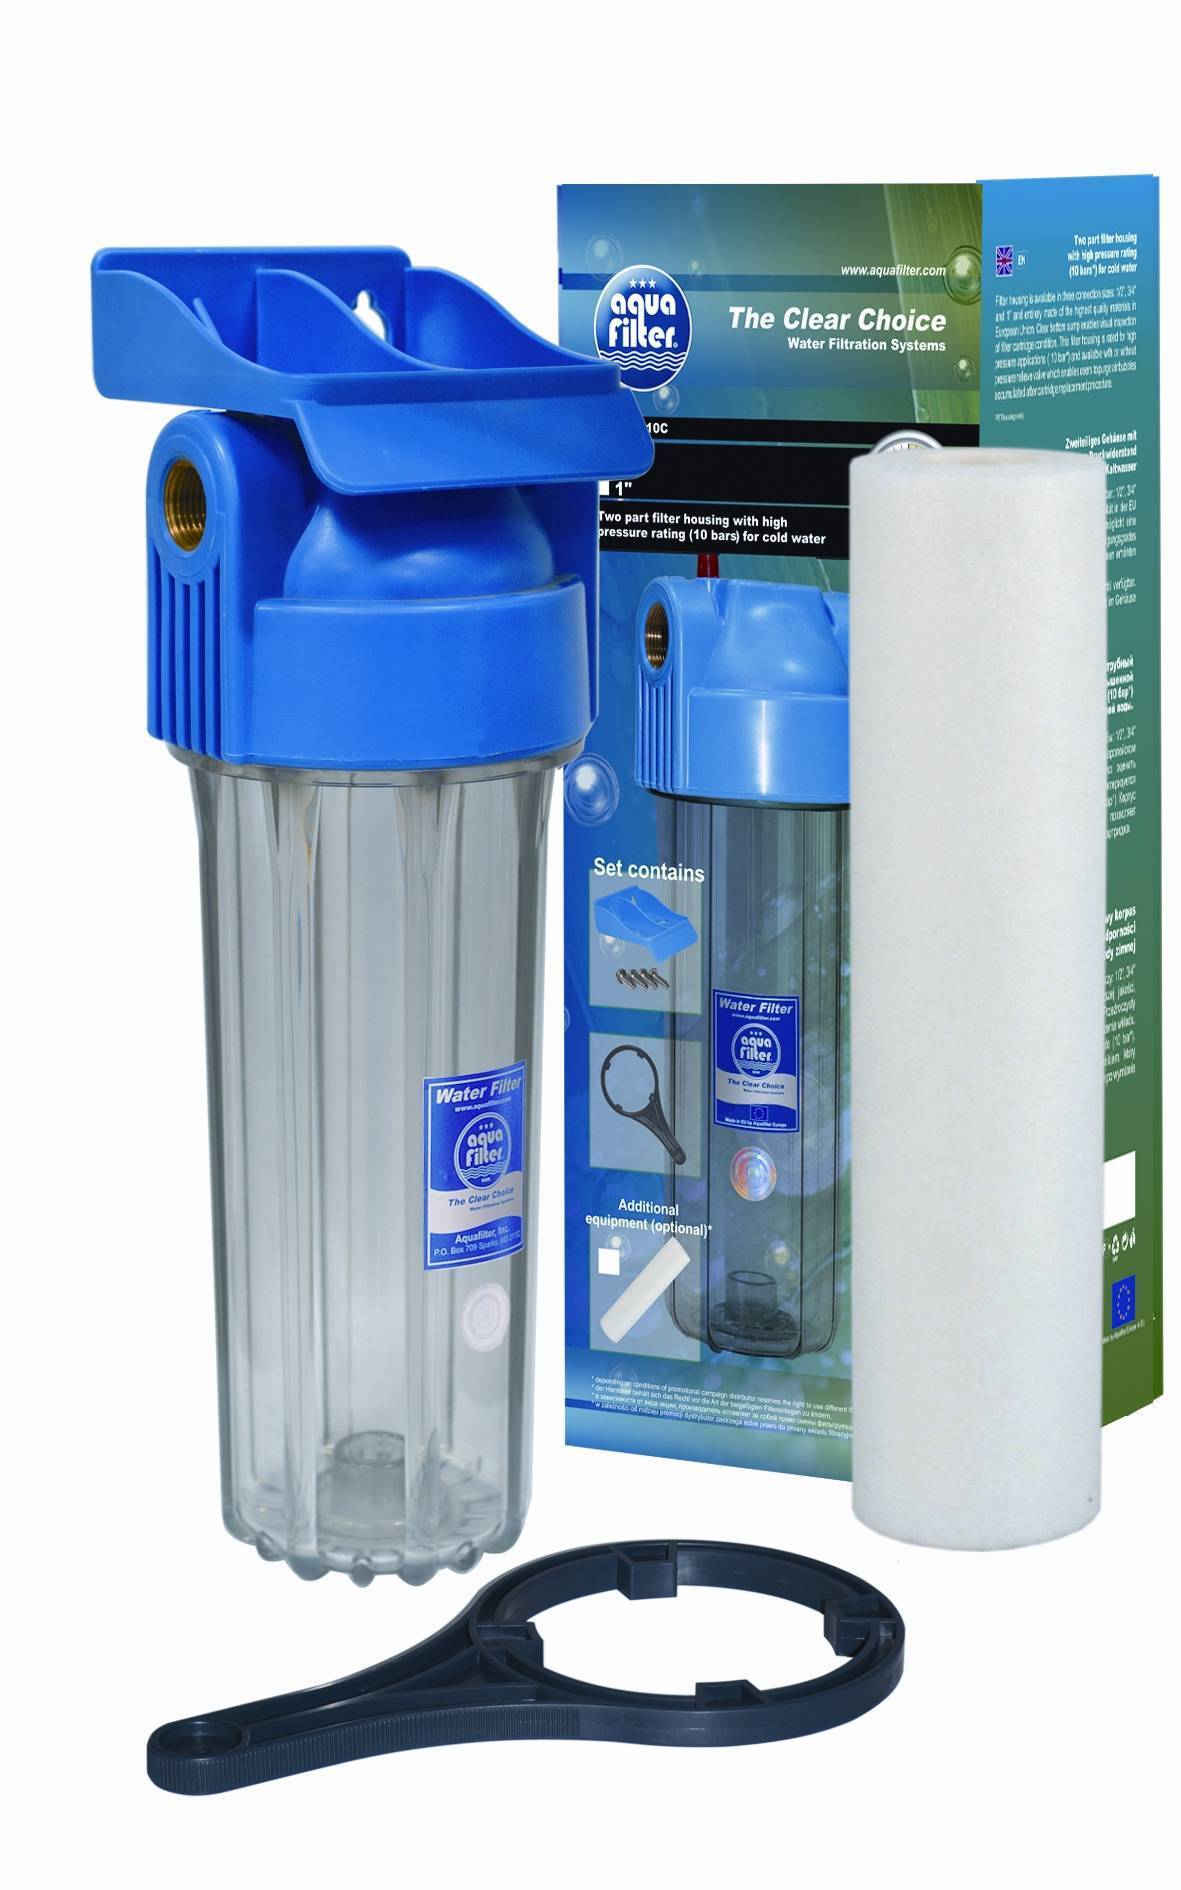 Фильтр для очистки воды спб. Фильтр магистральный АКВАКИТ SL 10 3p TP 1. Фильтр водяной проточный магистральный Aquafilter. Фильтр Aquafilter fhpr1-hp1.